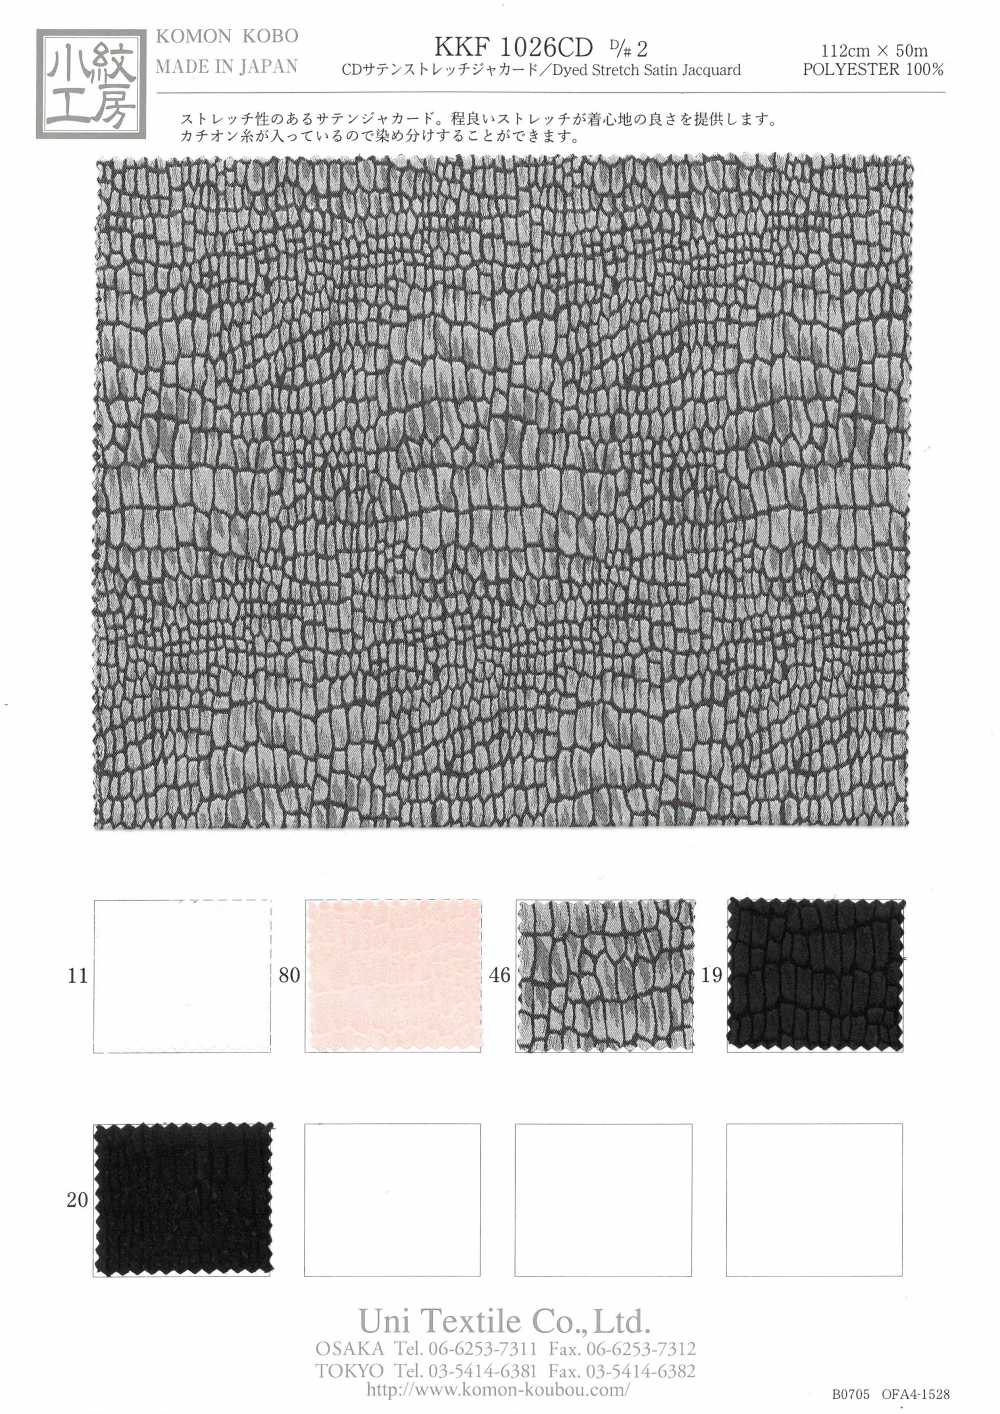 KKF1026CD-D/2 CD Satin Stretch Jacquard[Textile / Fabric] Uni Textile